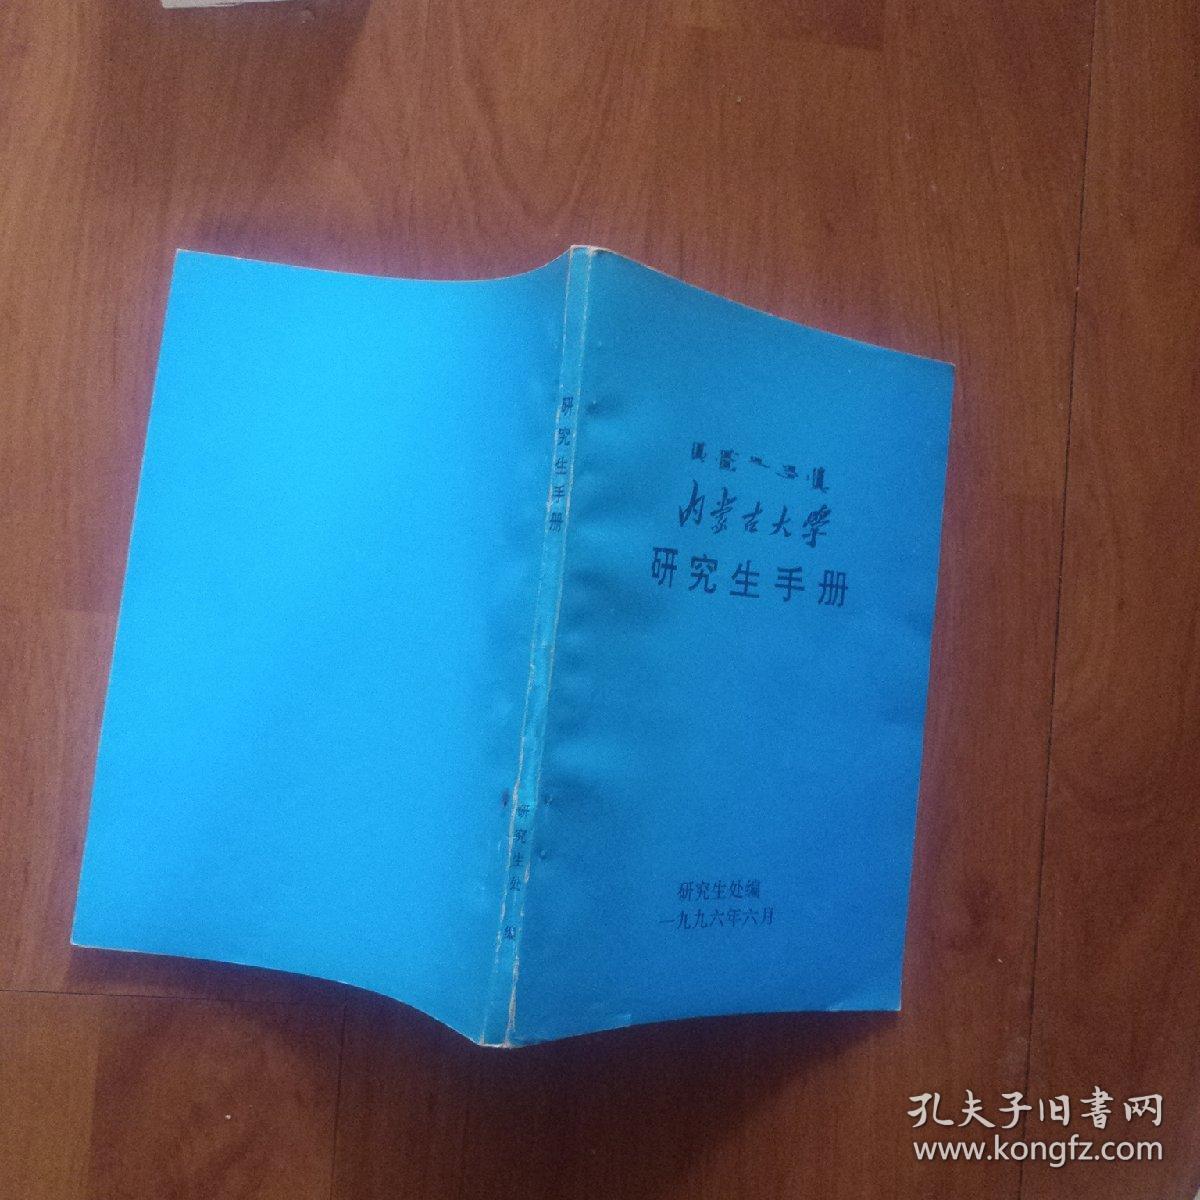 内蒙古大学研究生手册。